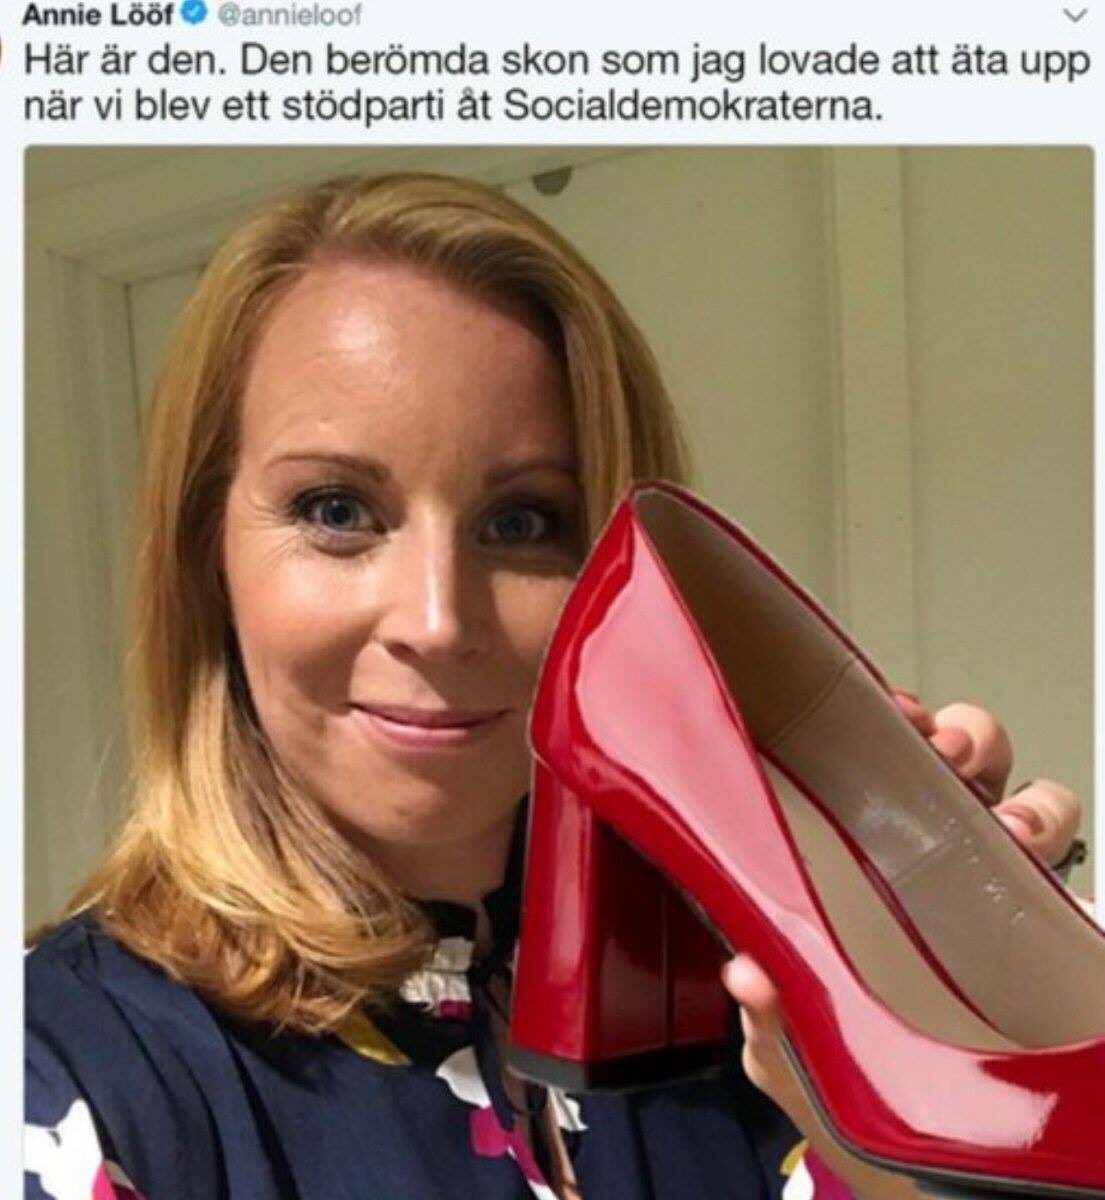 Lars Adaktusson on Twitter: "”Jag hellre upp min högra sko blir ett stödhjul åt Socialdemokraterna", sade Annie Lööf i en Expressenintervju i 2013. https://t.co/P3VBHKdNfi" / Twitter